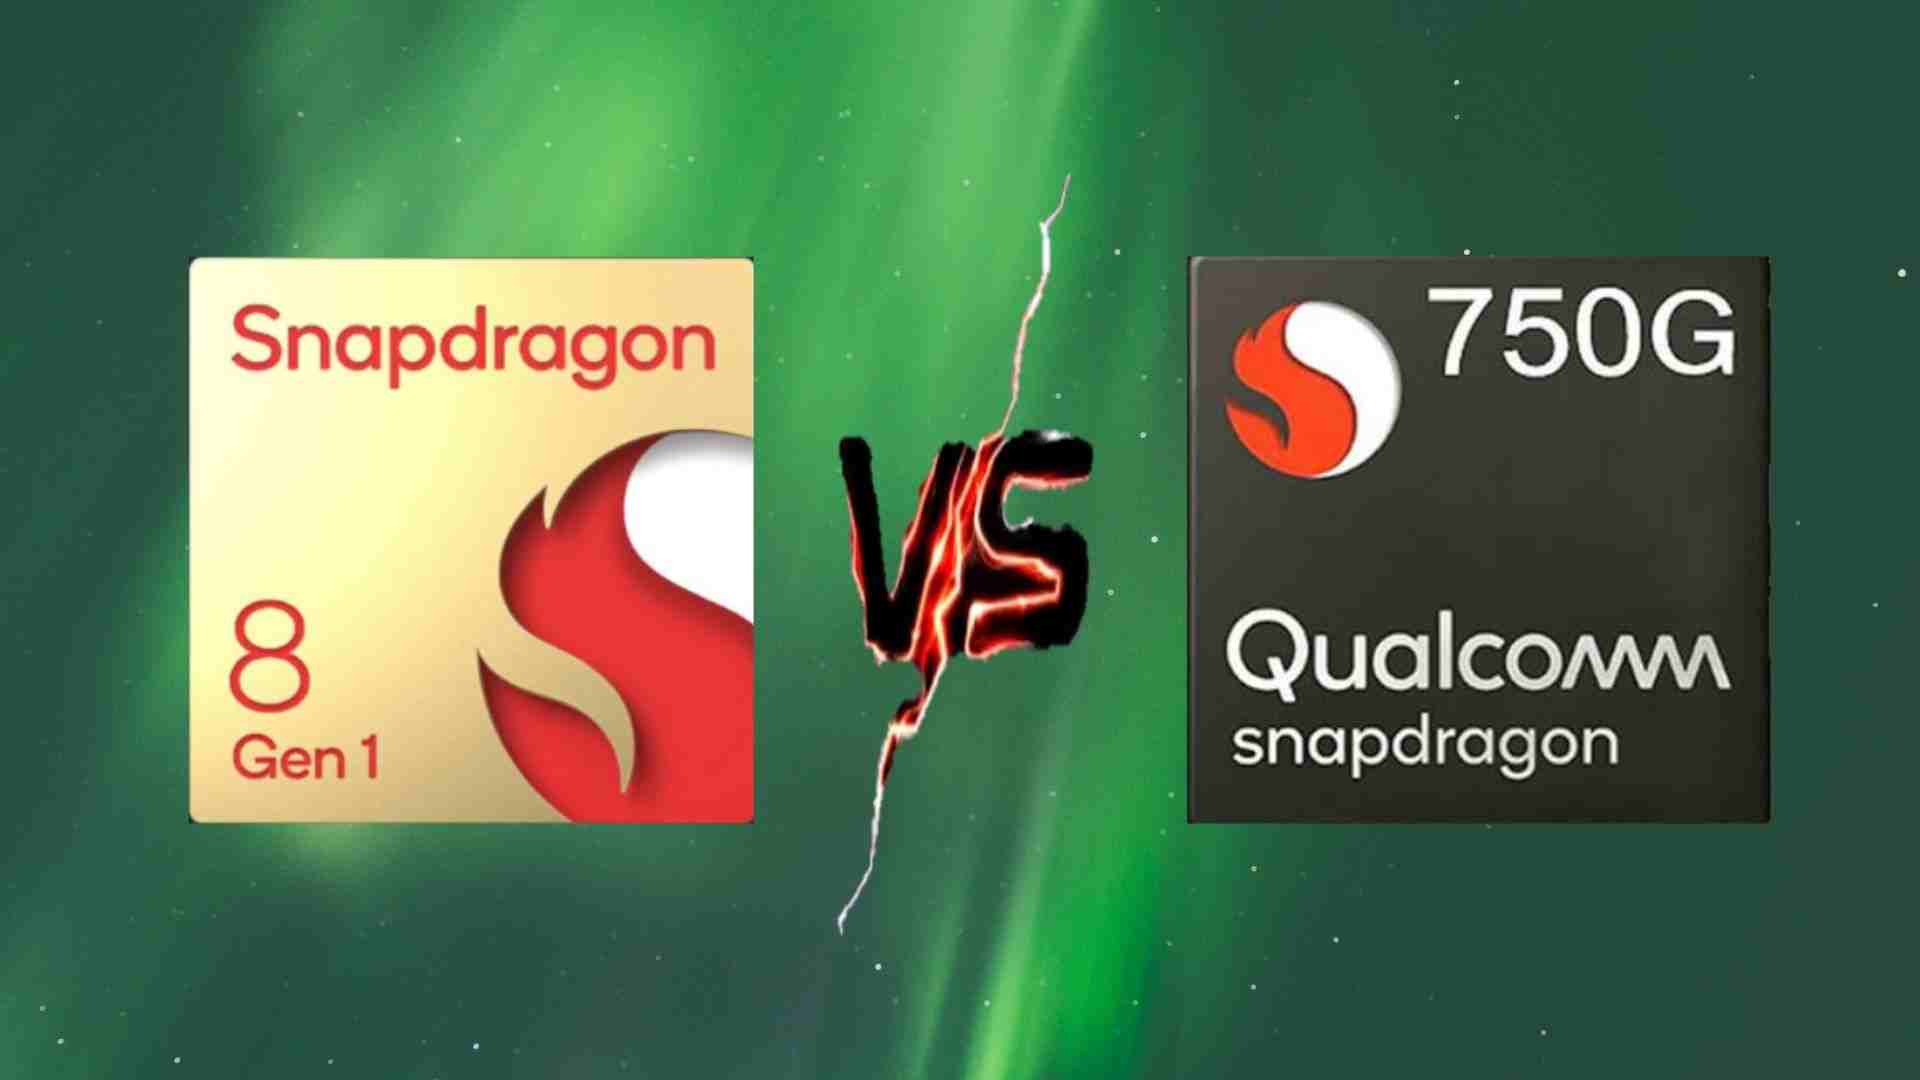 Snapdragon 8 Gen 1 vs Snapdragon 750G